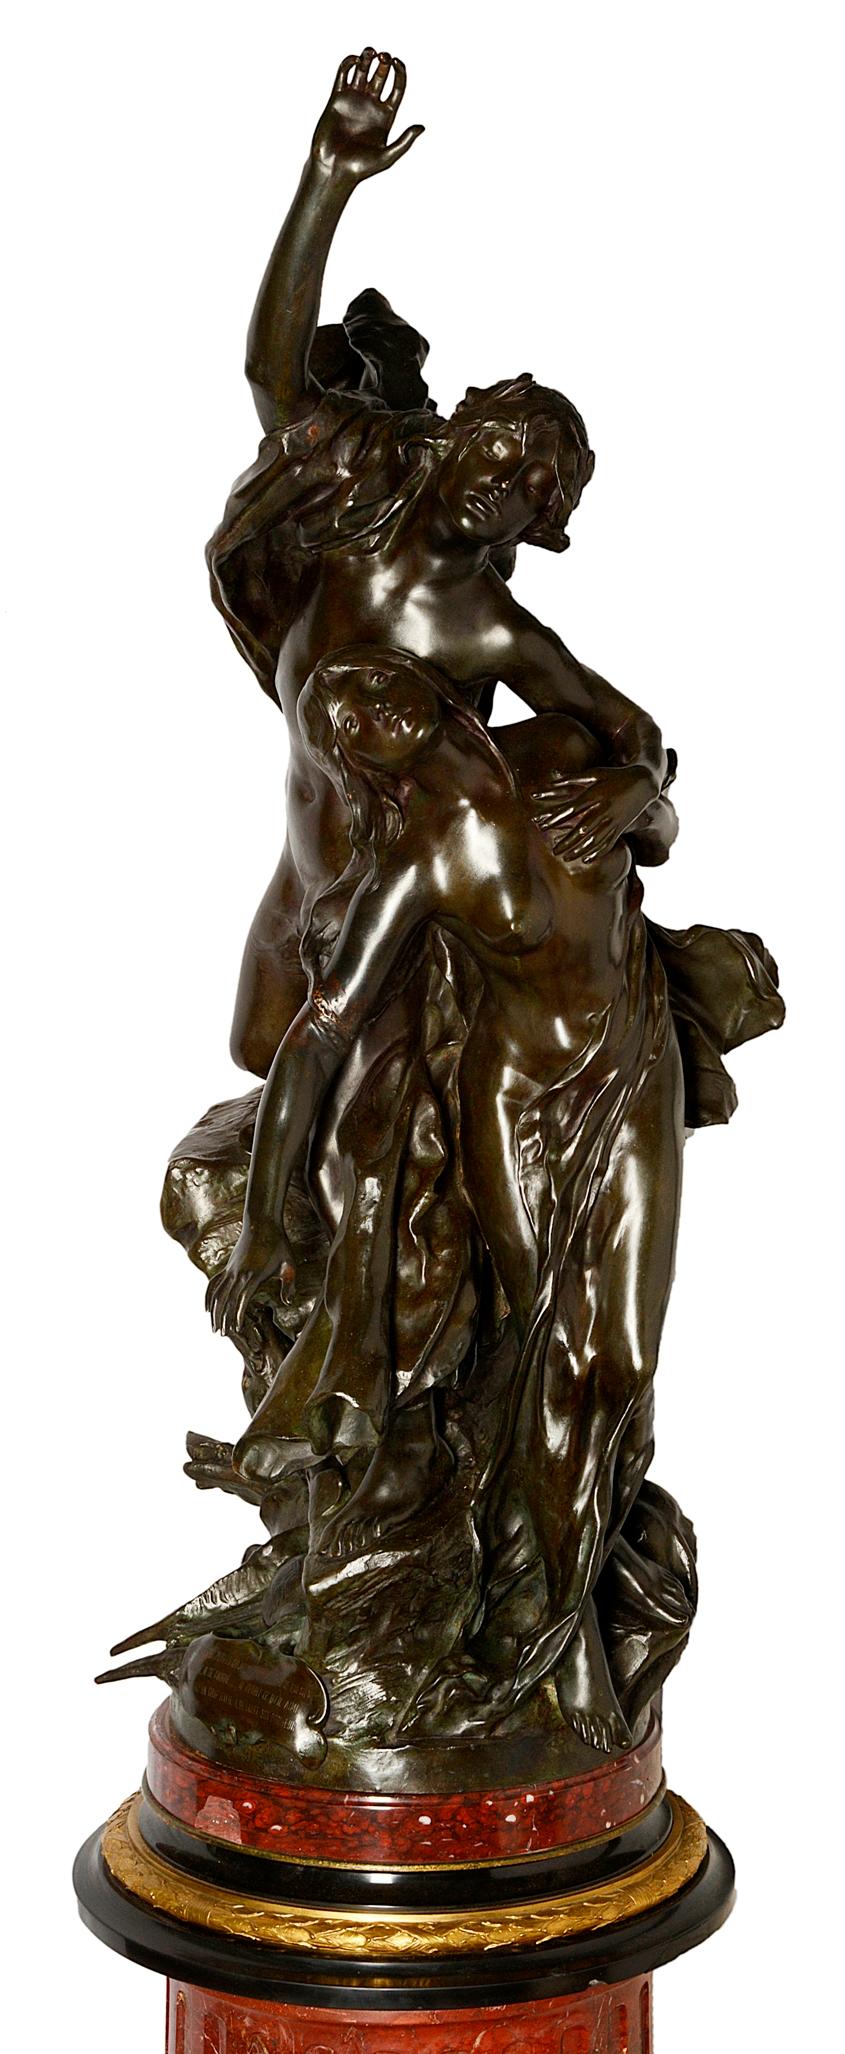 Très impressionnante statue de bronze classique du XIXe siècle représentant des personnages semi-nus ressemblant à des dieux et s'élançant vers le ciel, avec un chien de chasse à leurs pieds.
Monté sur un impressionnant piédestal en marbre rouge